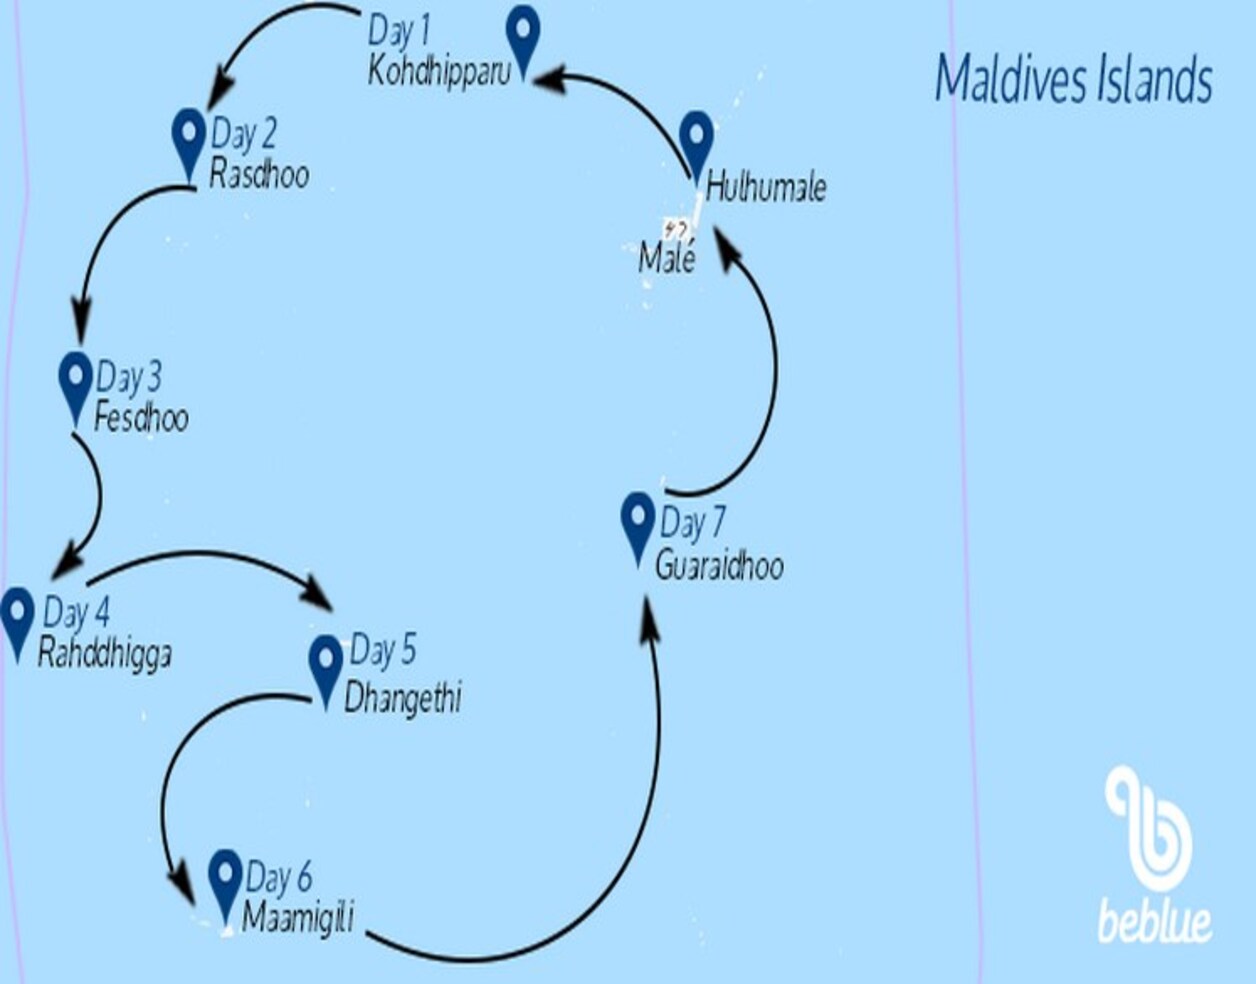 Maldives "All Inclusive" cruise - ID 133